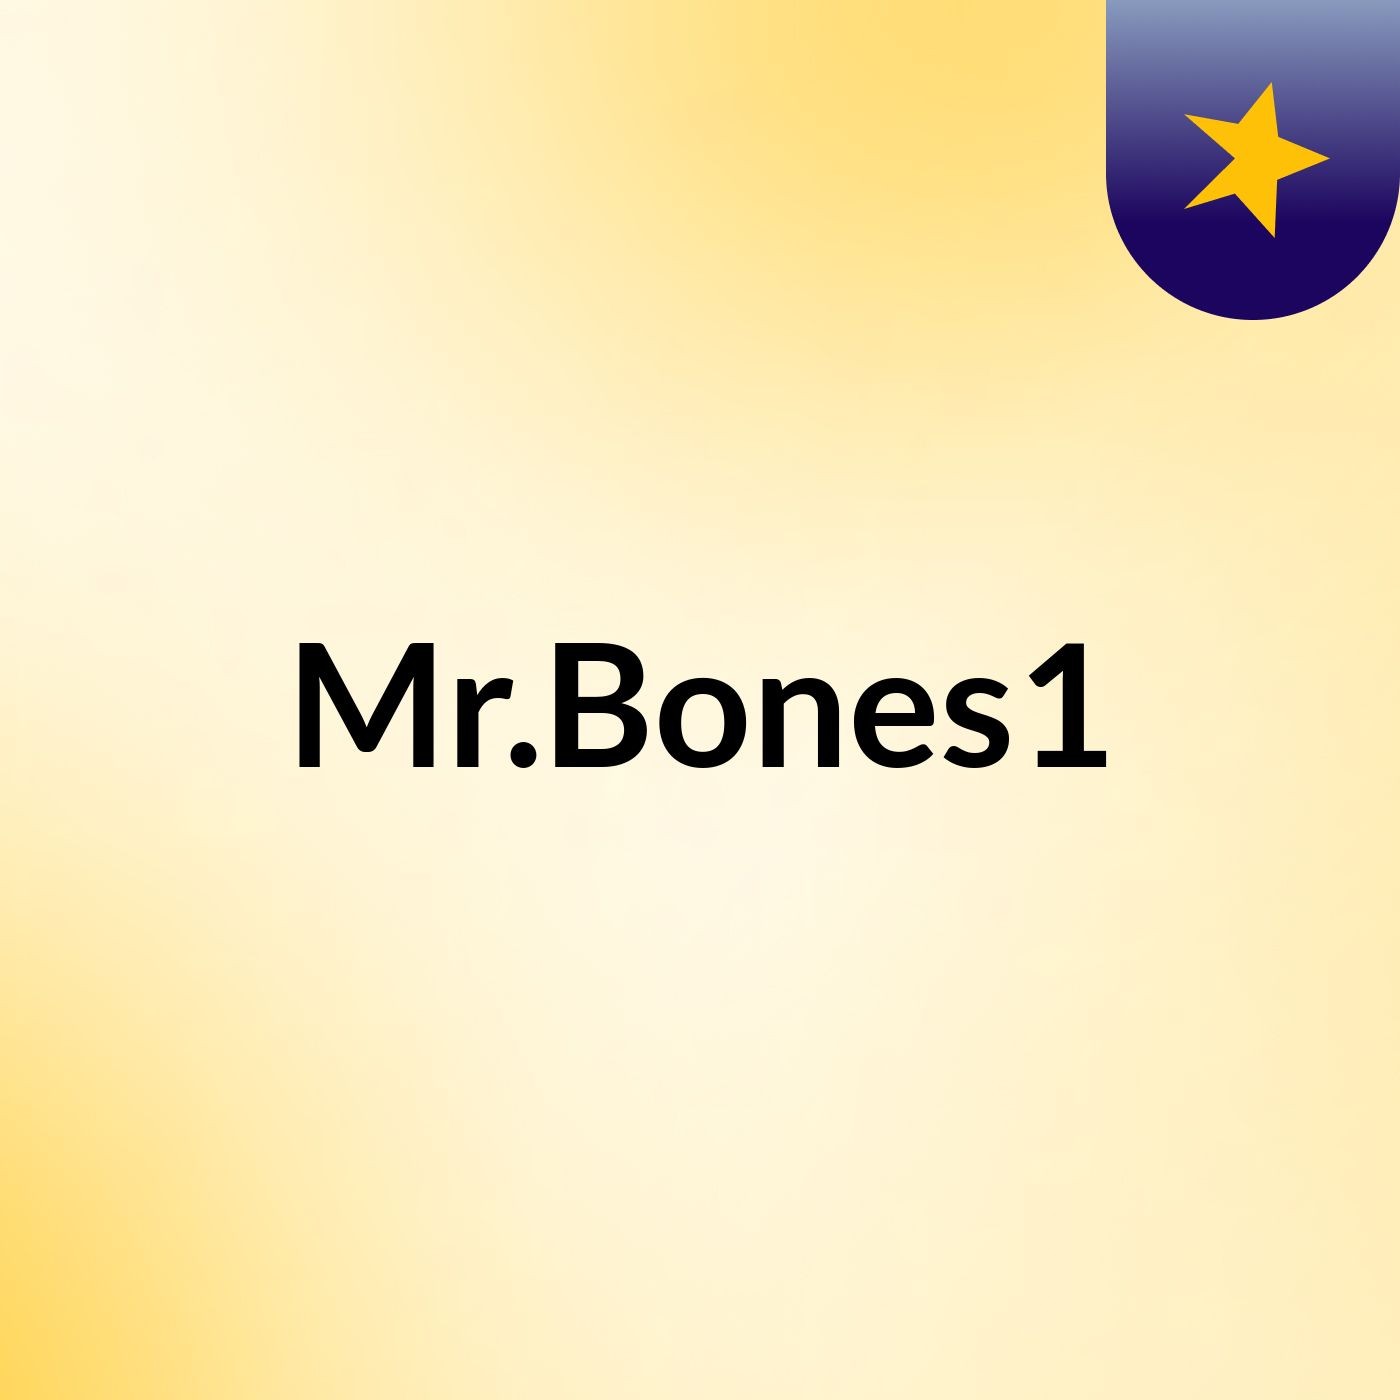 Mr.Bones1